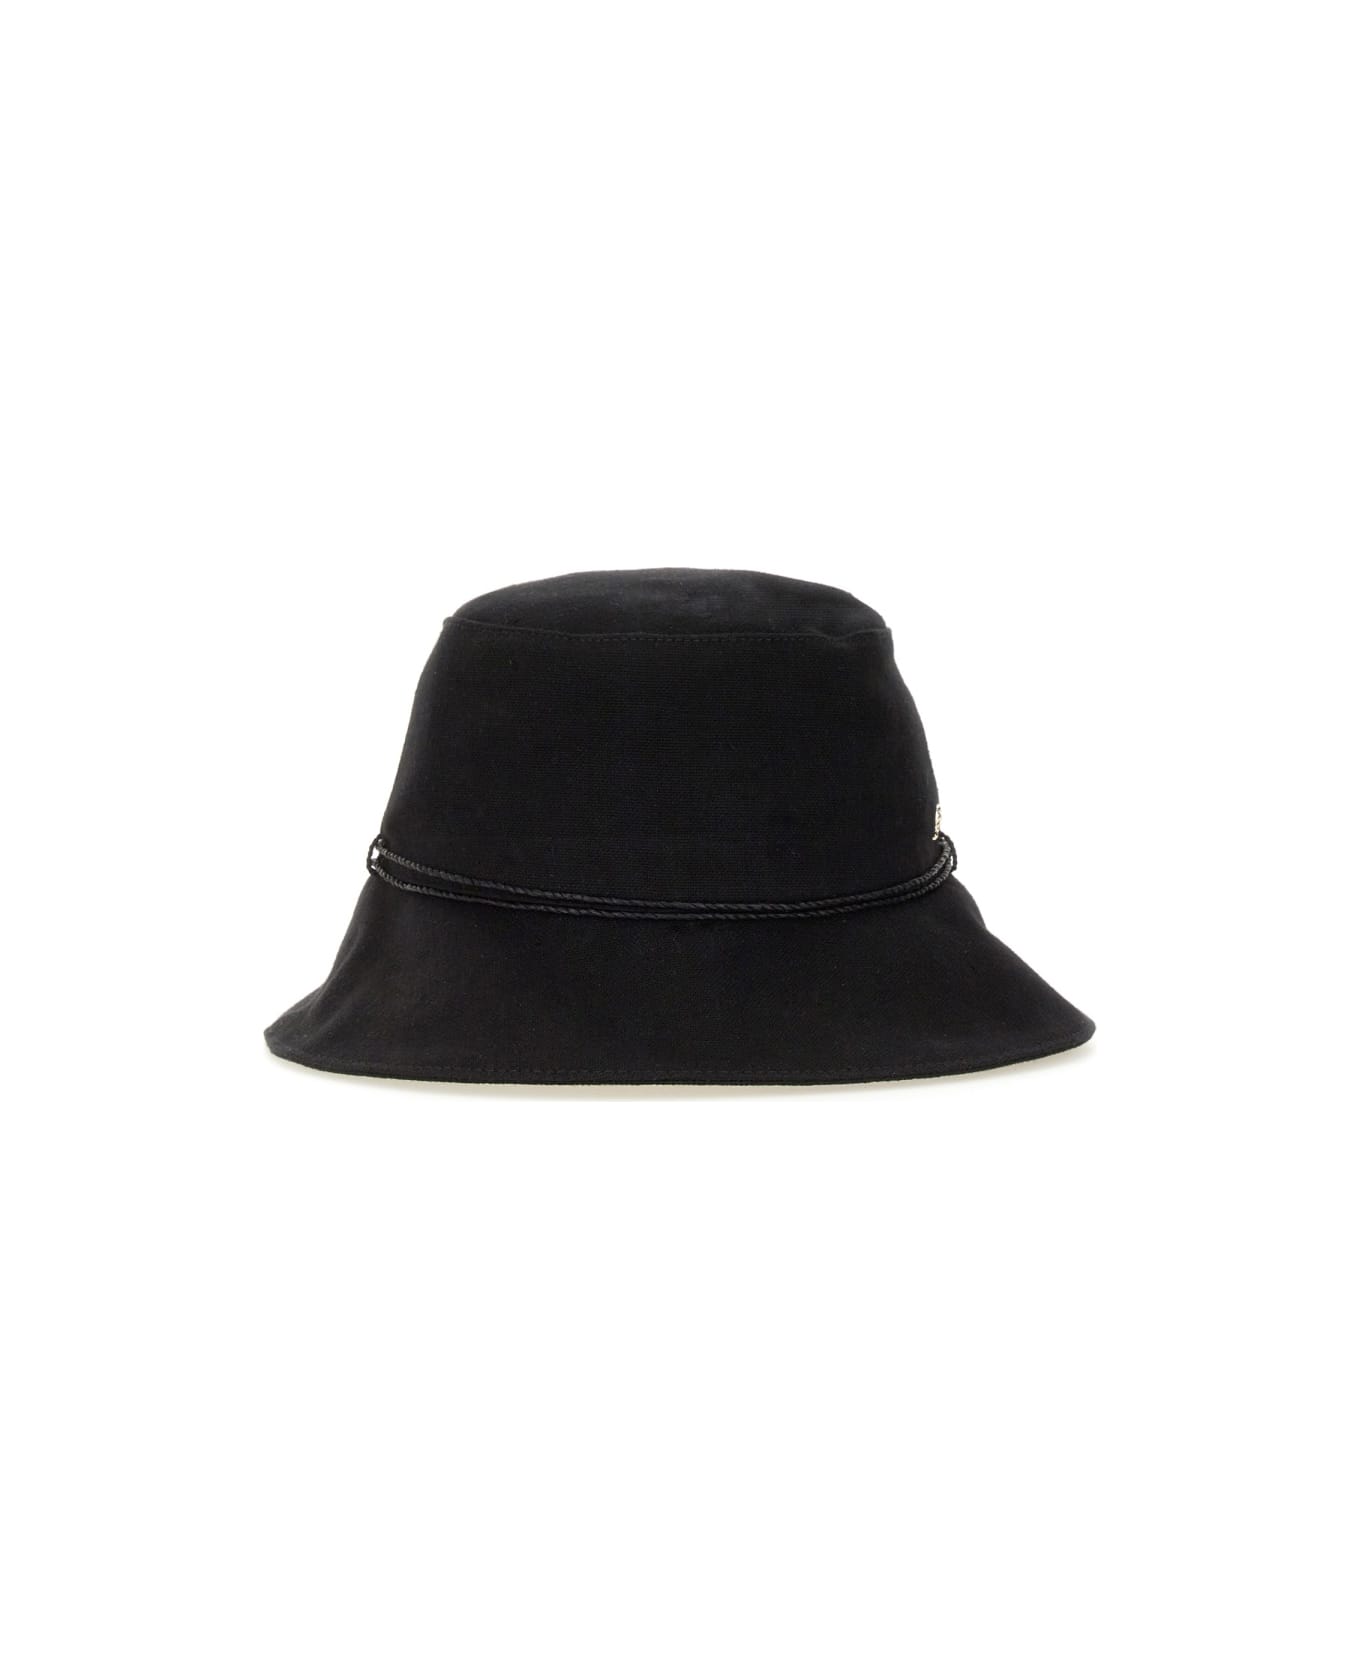 Helen Kaminski Hat "sundar" - BLACK